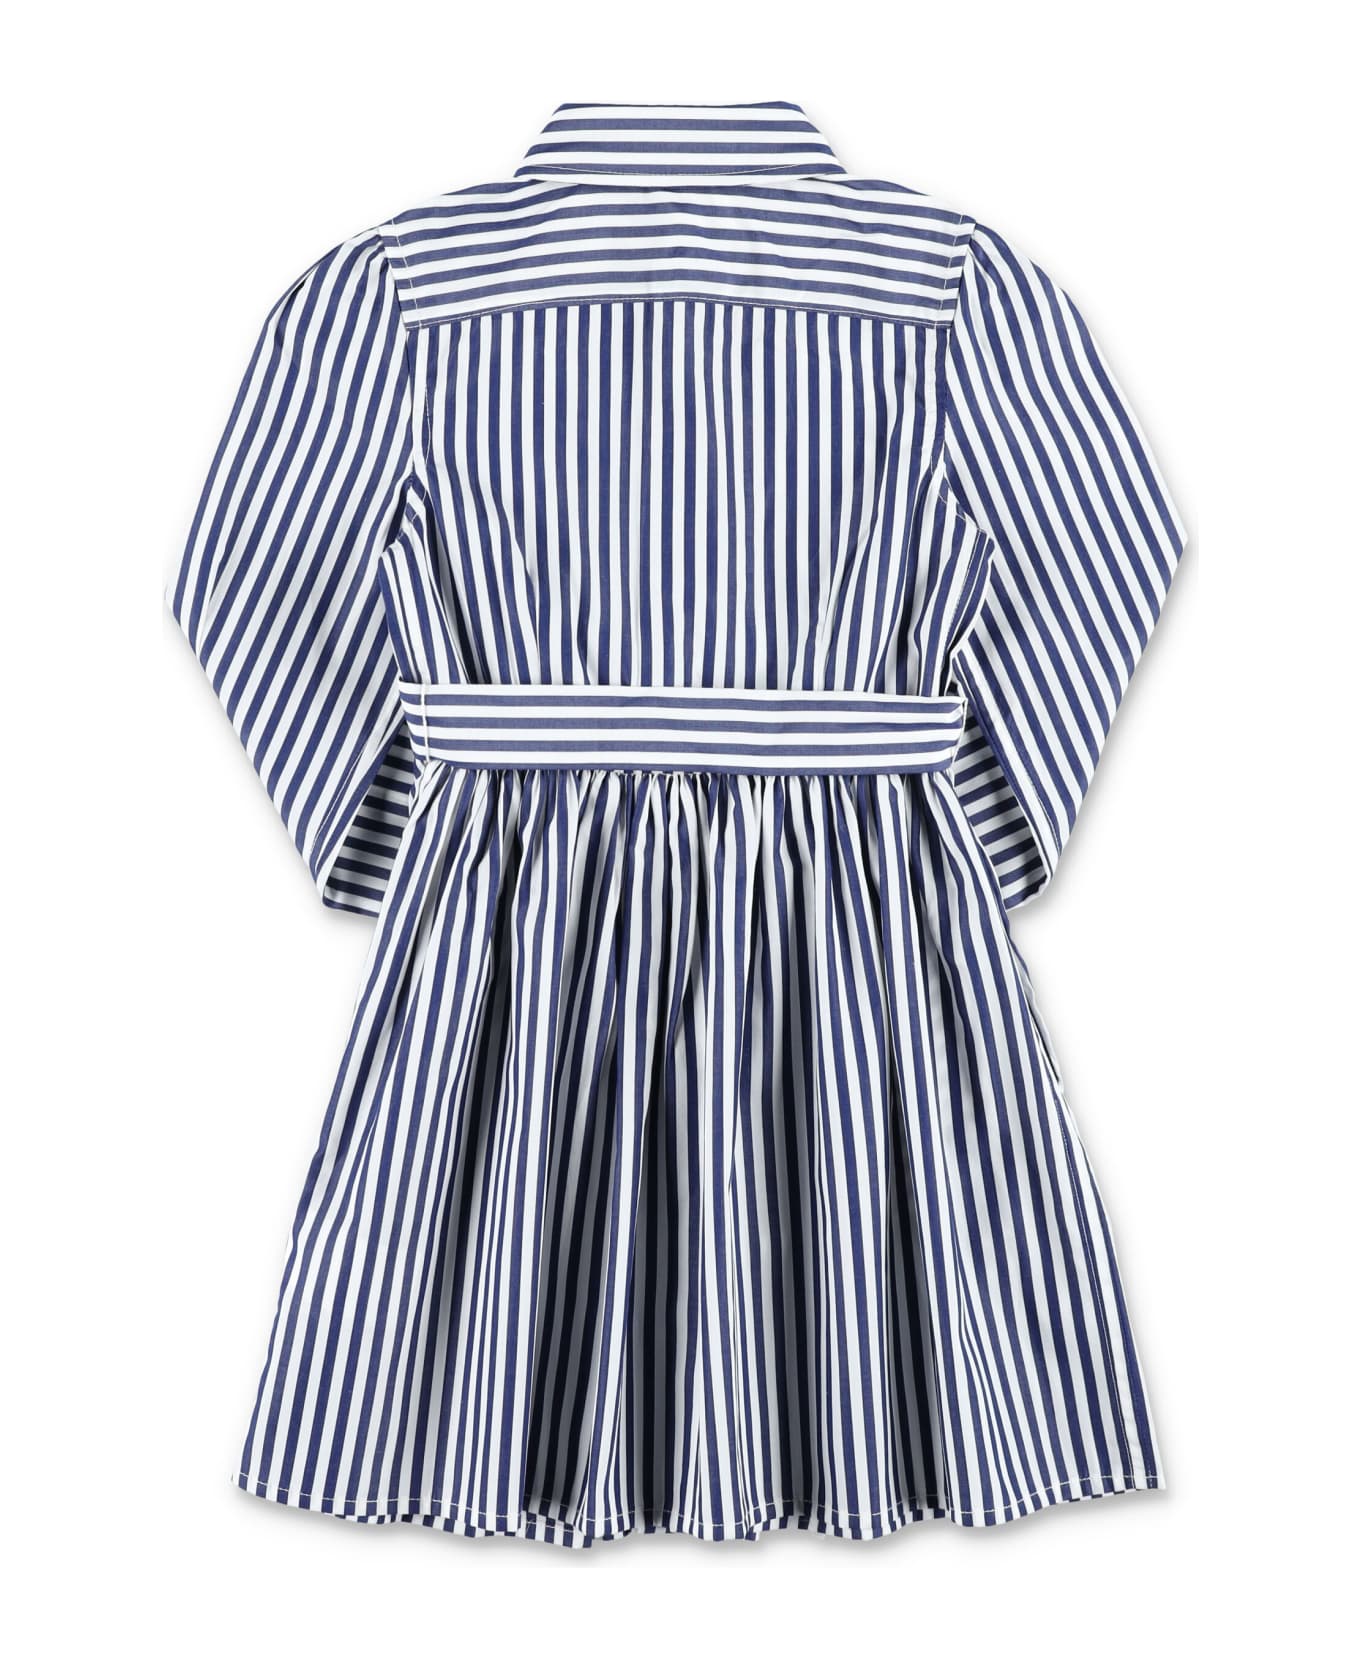 Polo Ralph Lauren Shirt Stripe Dress - NAVY